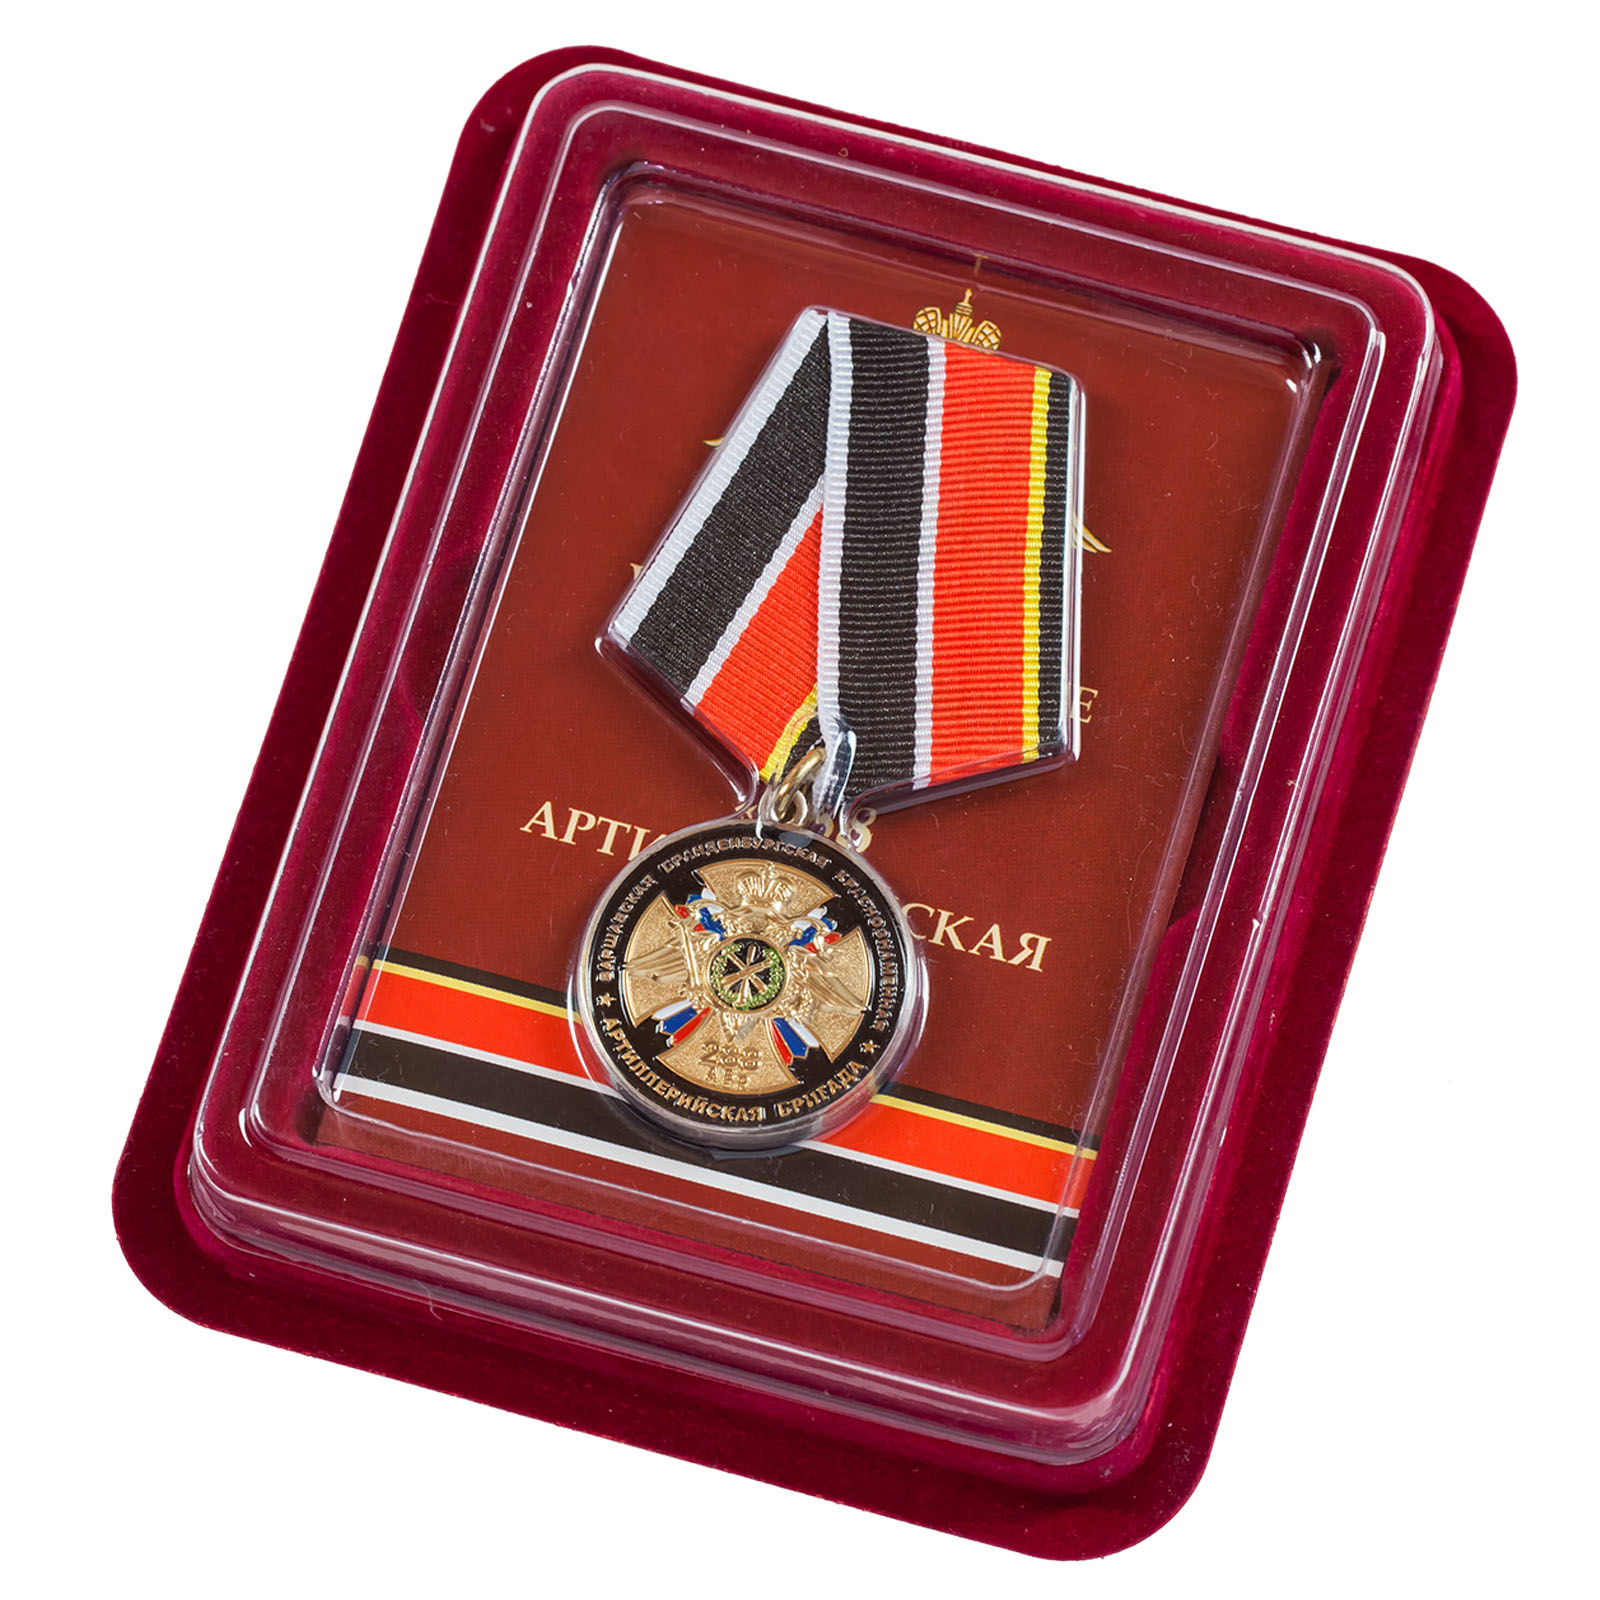 Купить медаль "75 лет 288-ой Артиллерийской бригады" в футляре